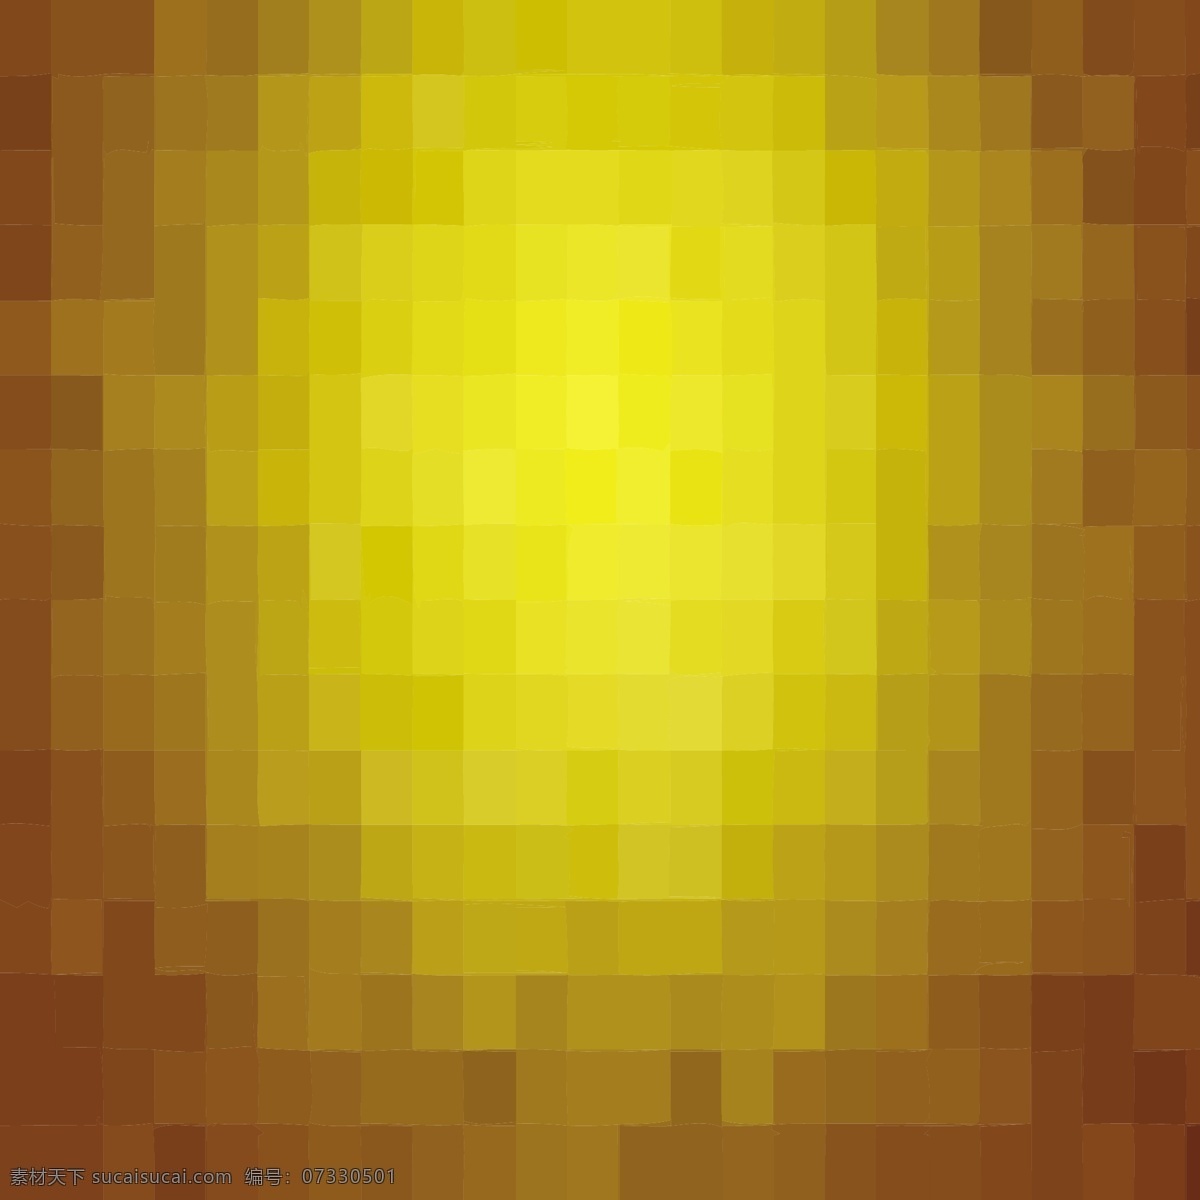 抽象 背景 黄色 正方形 模式 抽象背景 几何 壁纸 几何背景 几何图形 多边形 图案背景 抽象图案 多边形背景